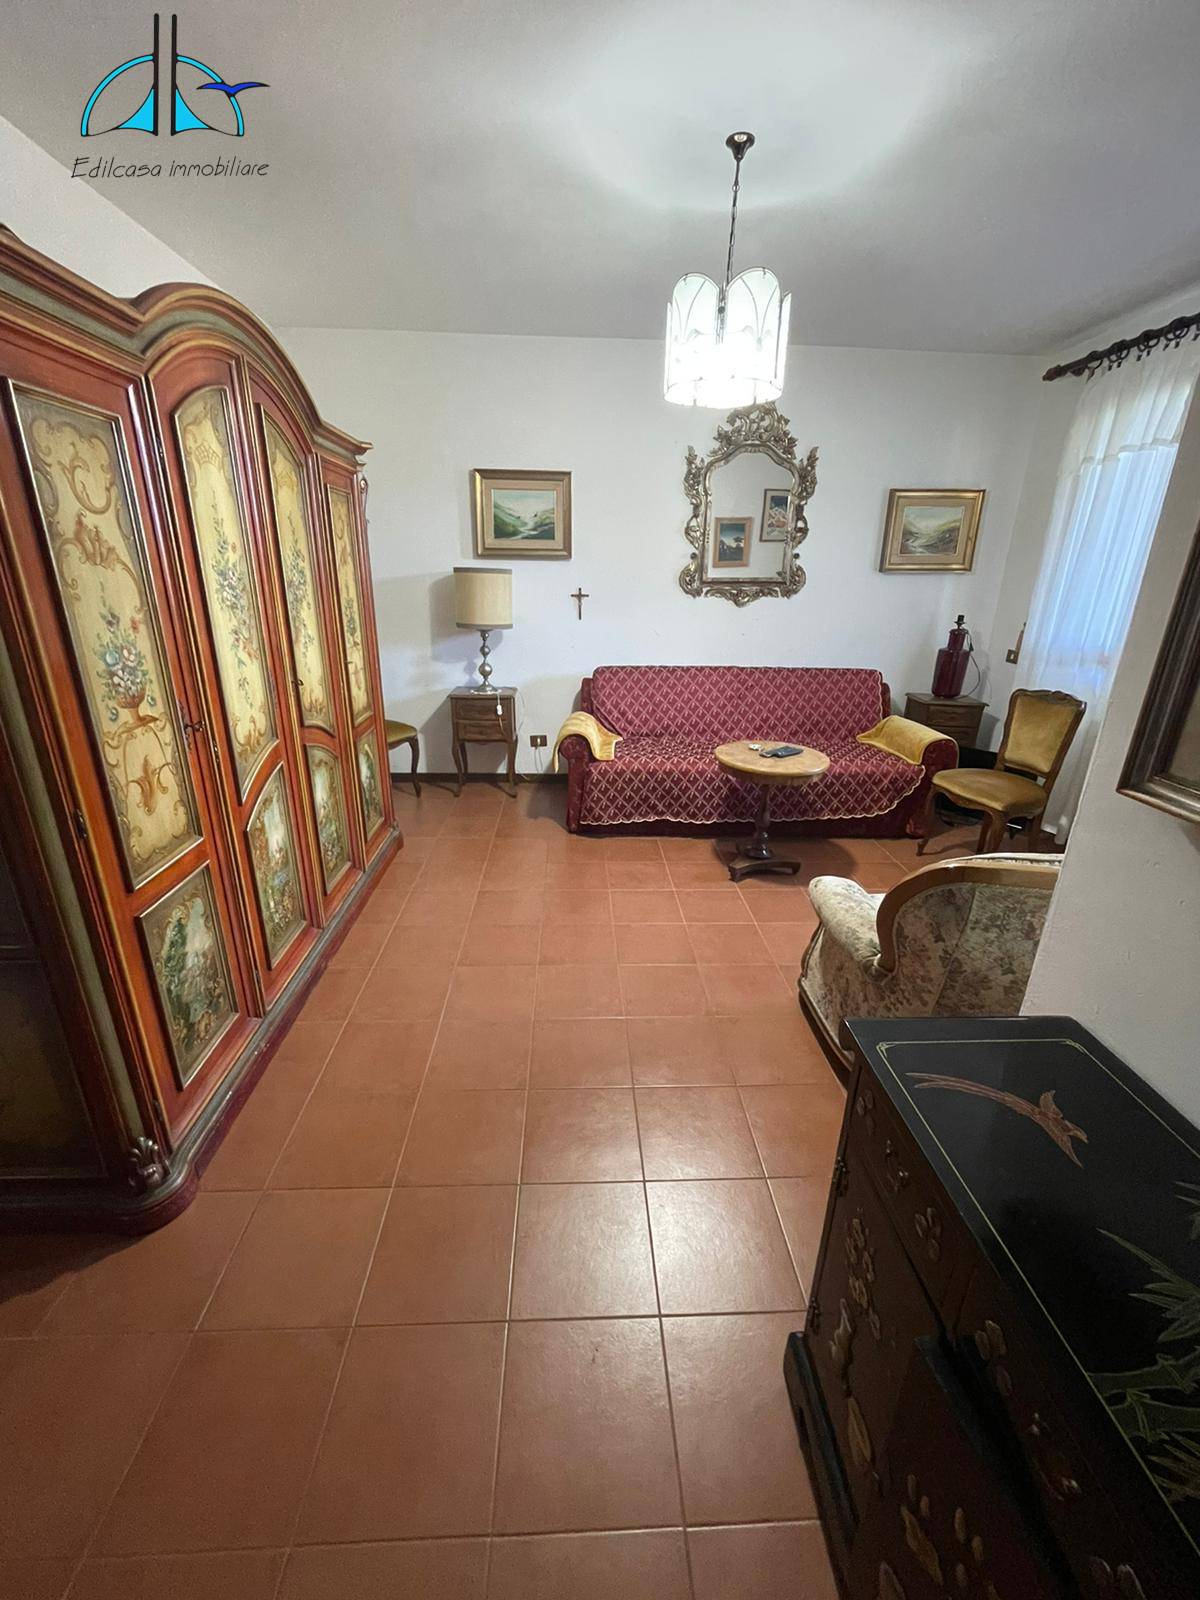 Appartamento in vendita a Scandriglia, 4 locali, prezzo € 58.000 | CambioCasa.it